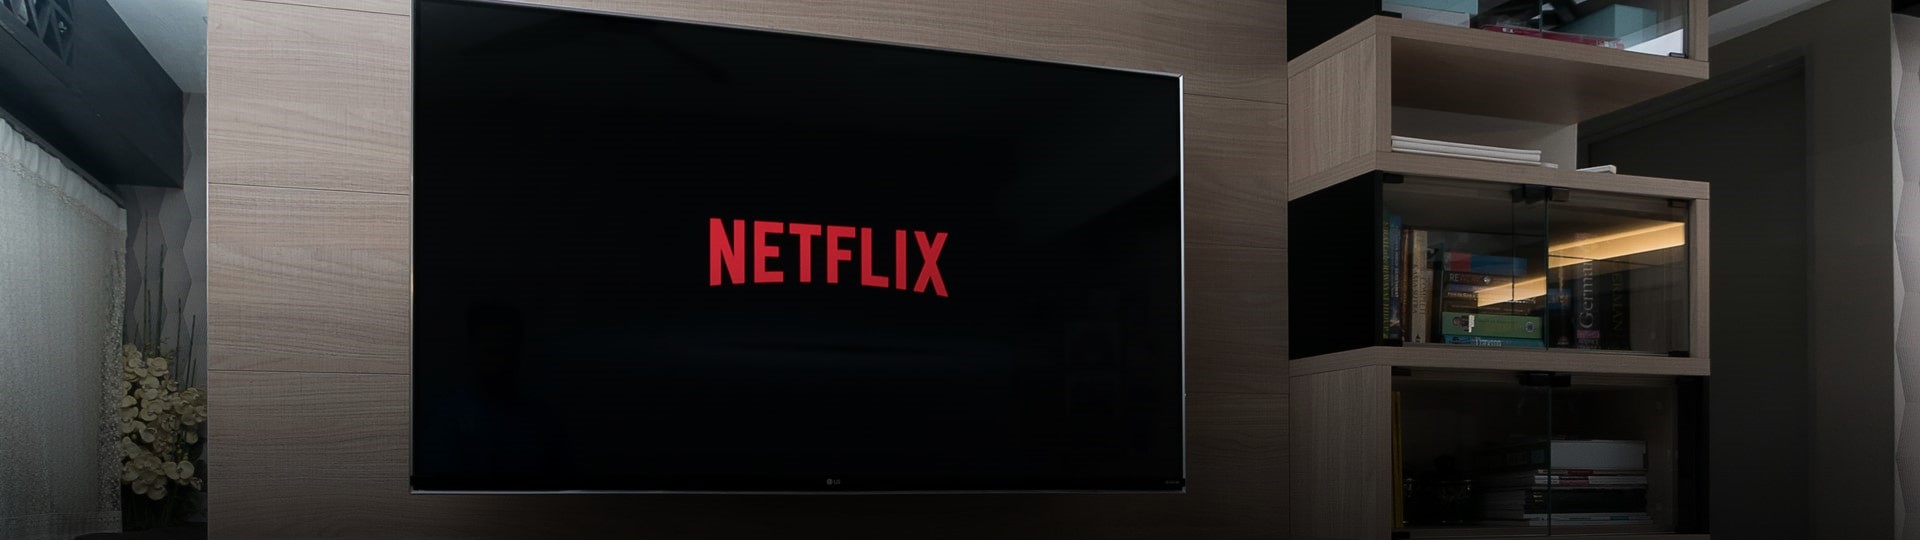 Americká streamovací služba Netflix se chystá nabízet i videohry